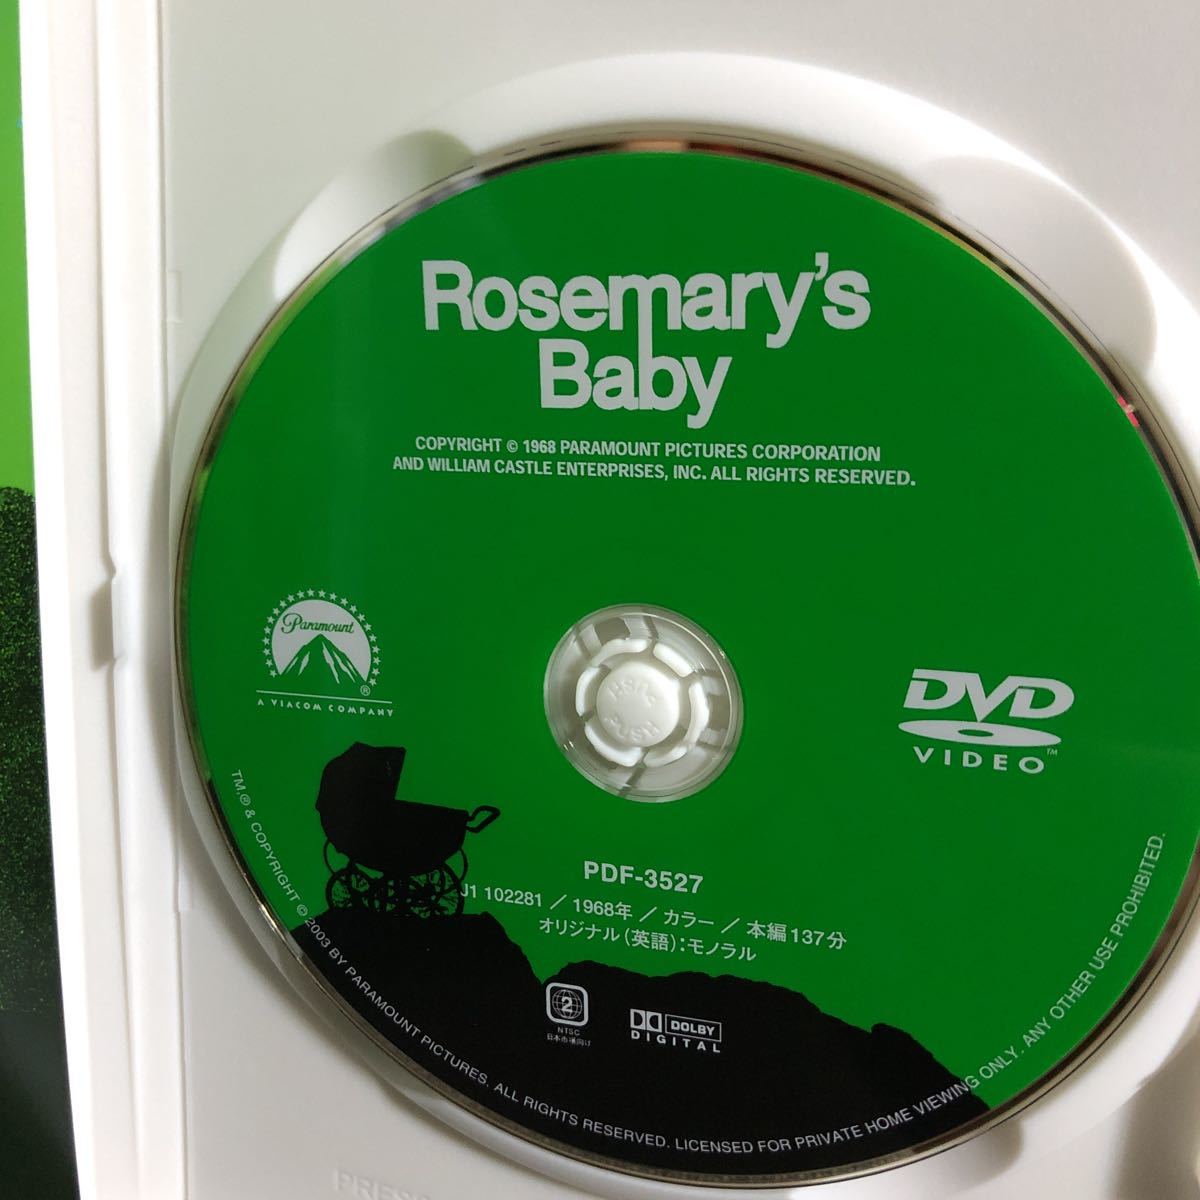 『ローズマリーの赤ちゃん』ロマン・ポランスキー / ミア・ファロー (DVD/パラマウント)【セル版】【送料無料】